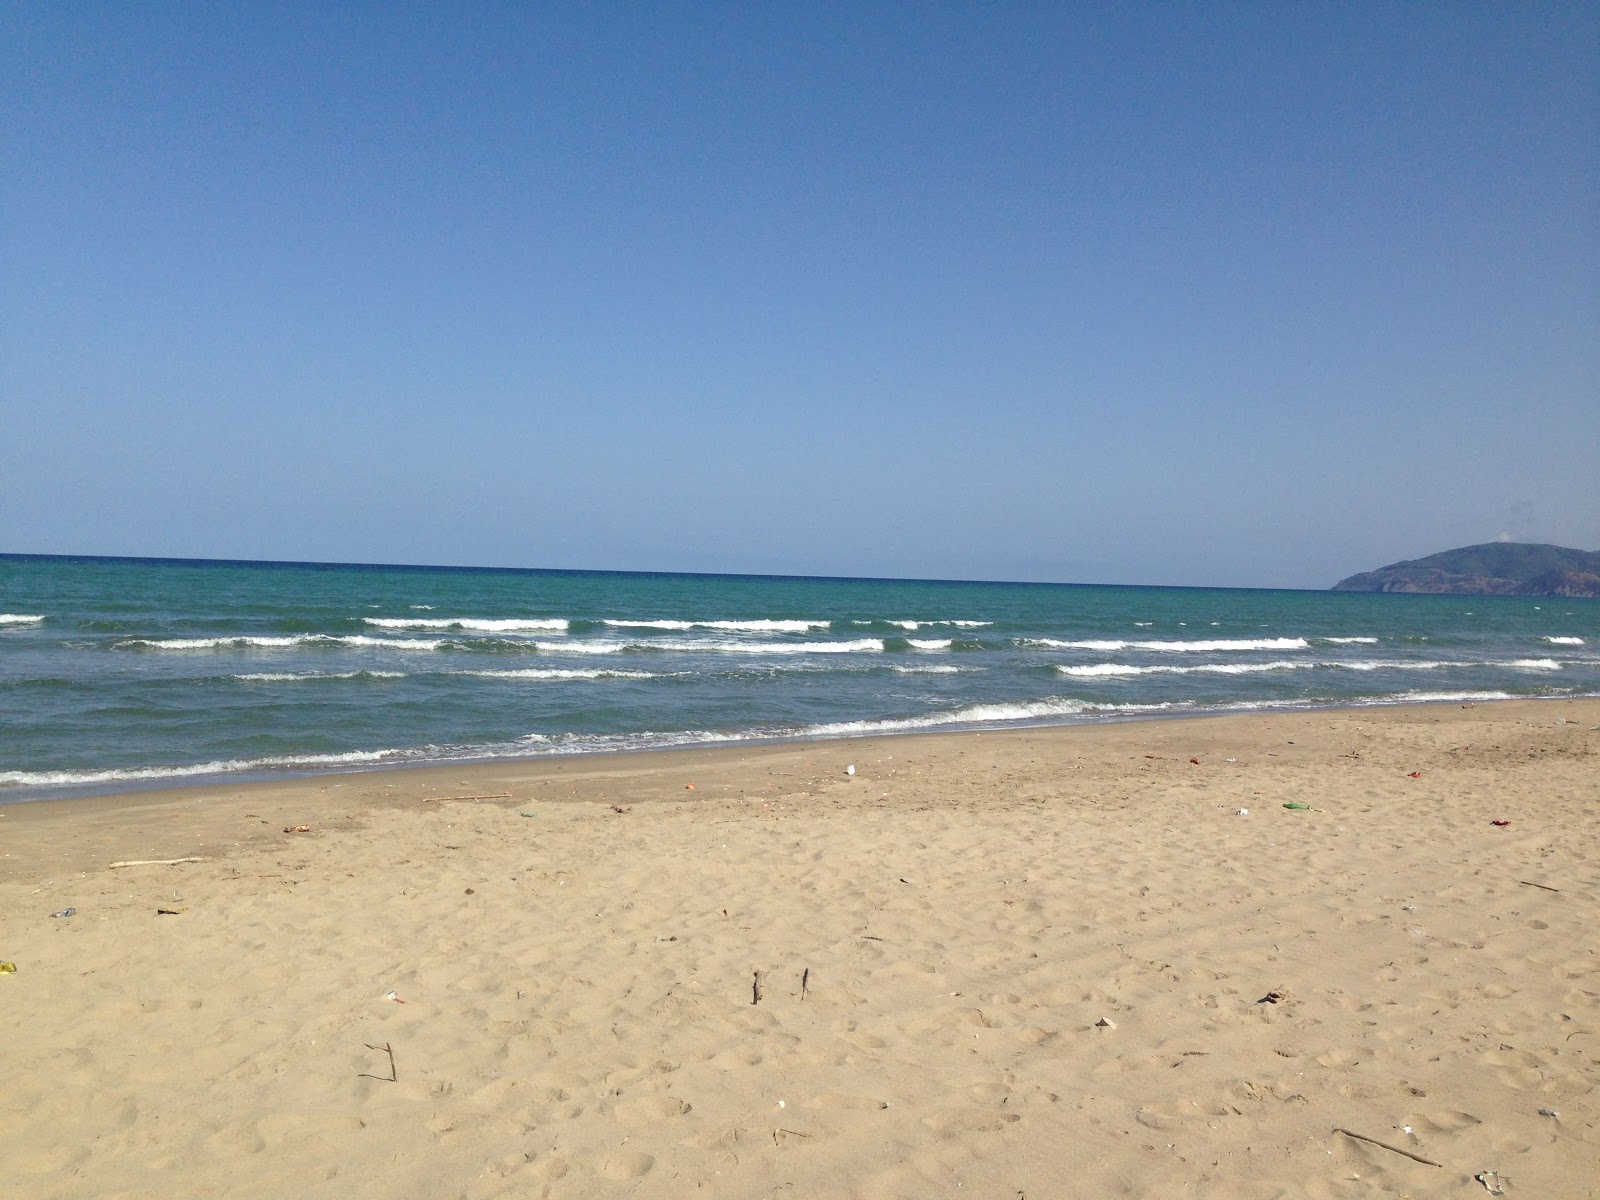 Sidi Abdeslam beach'in fotoğrafı parlak kum yüzey ile